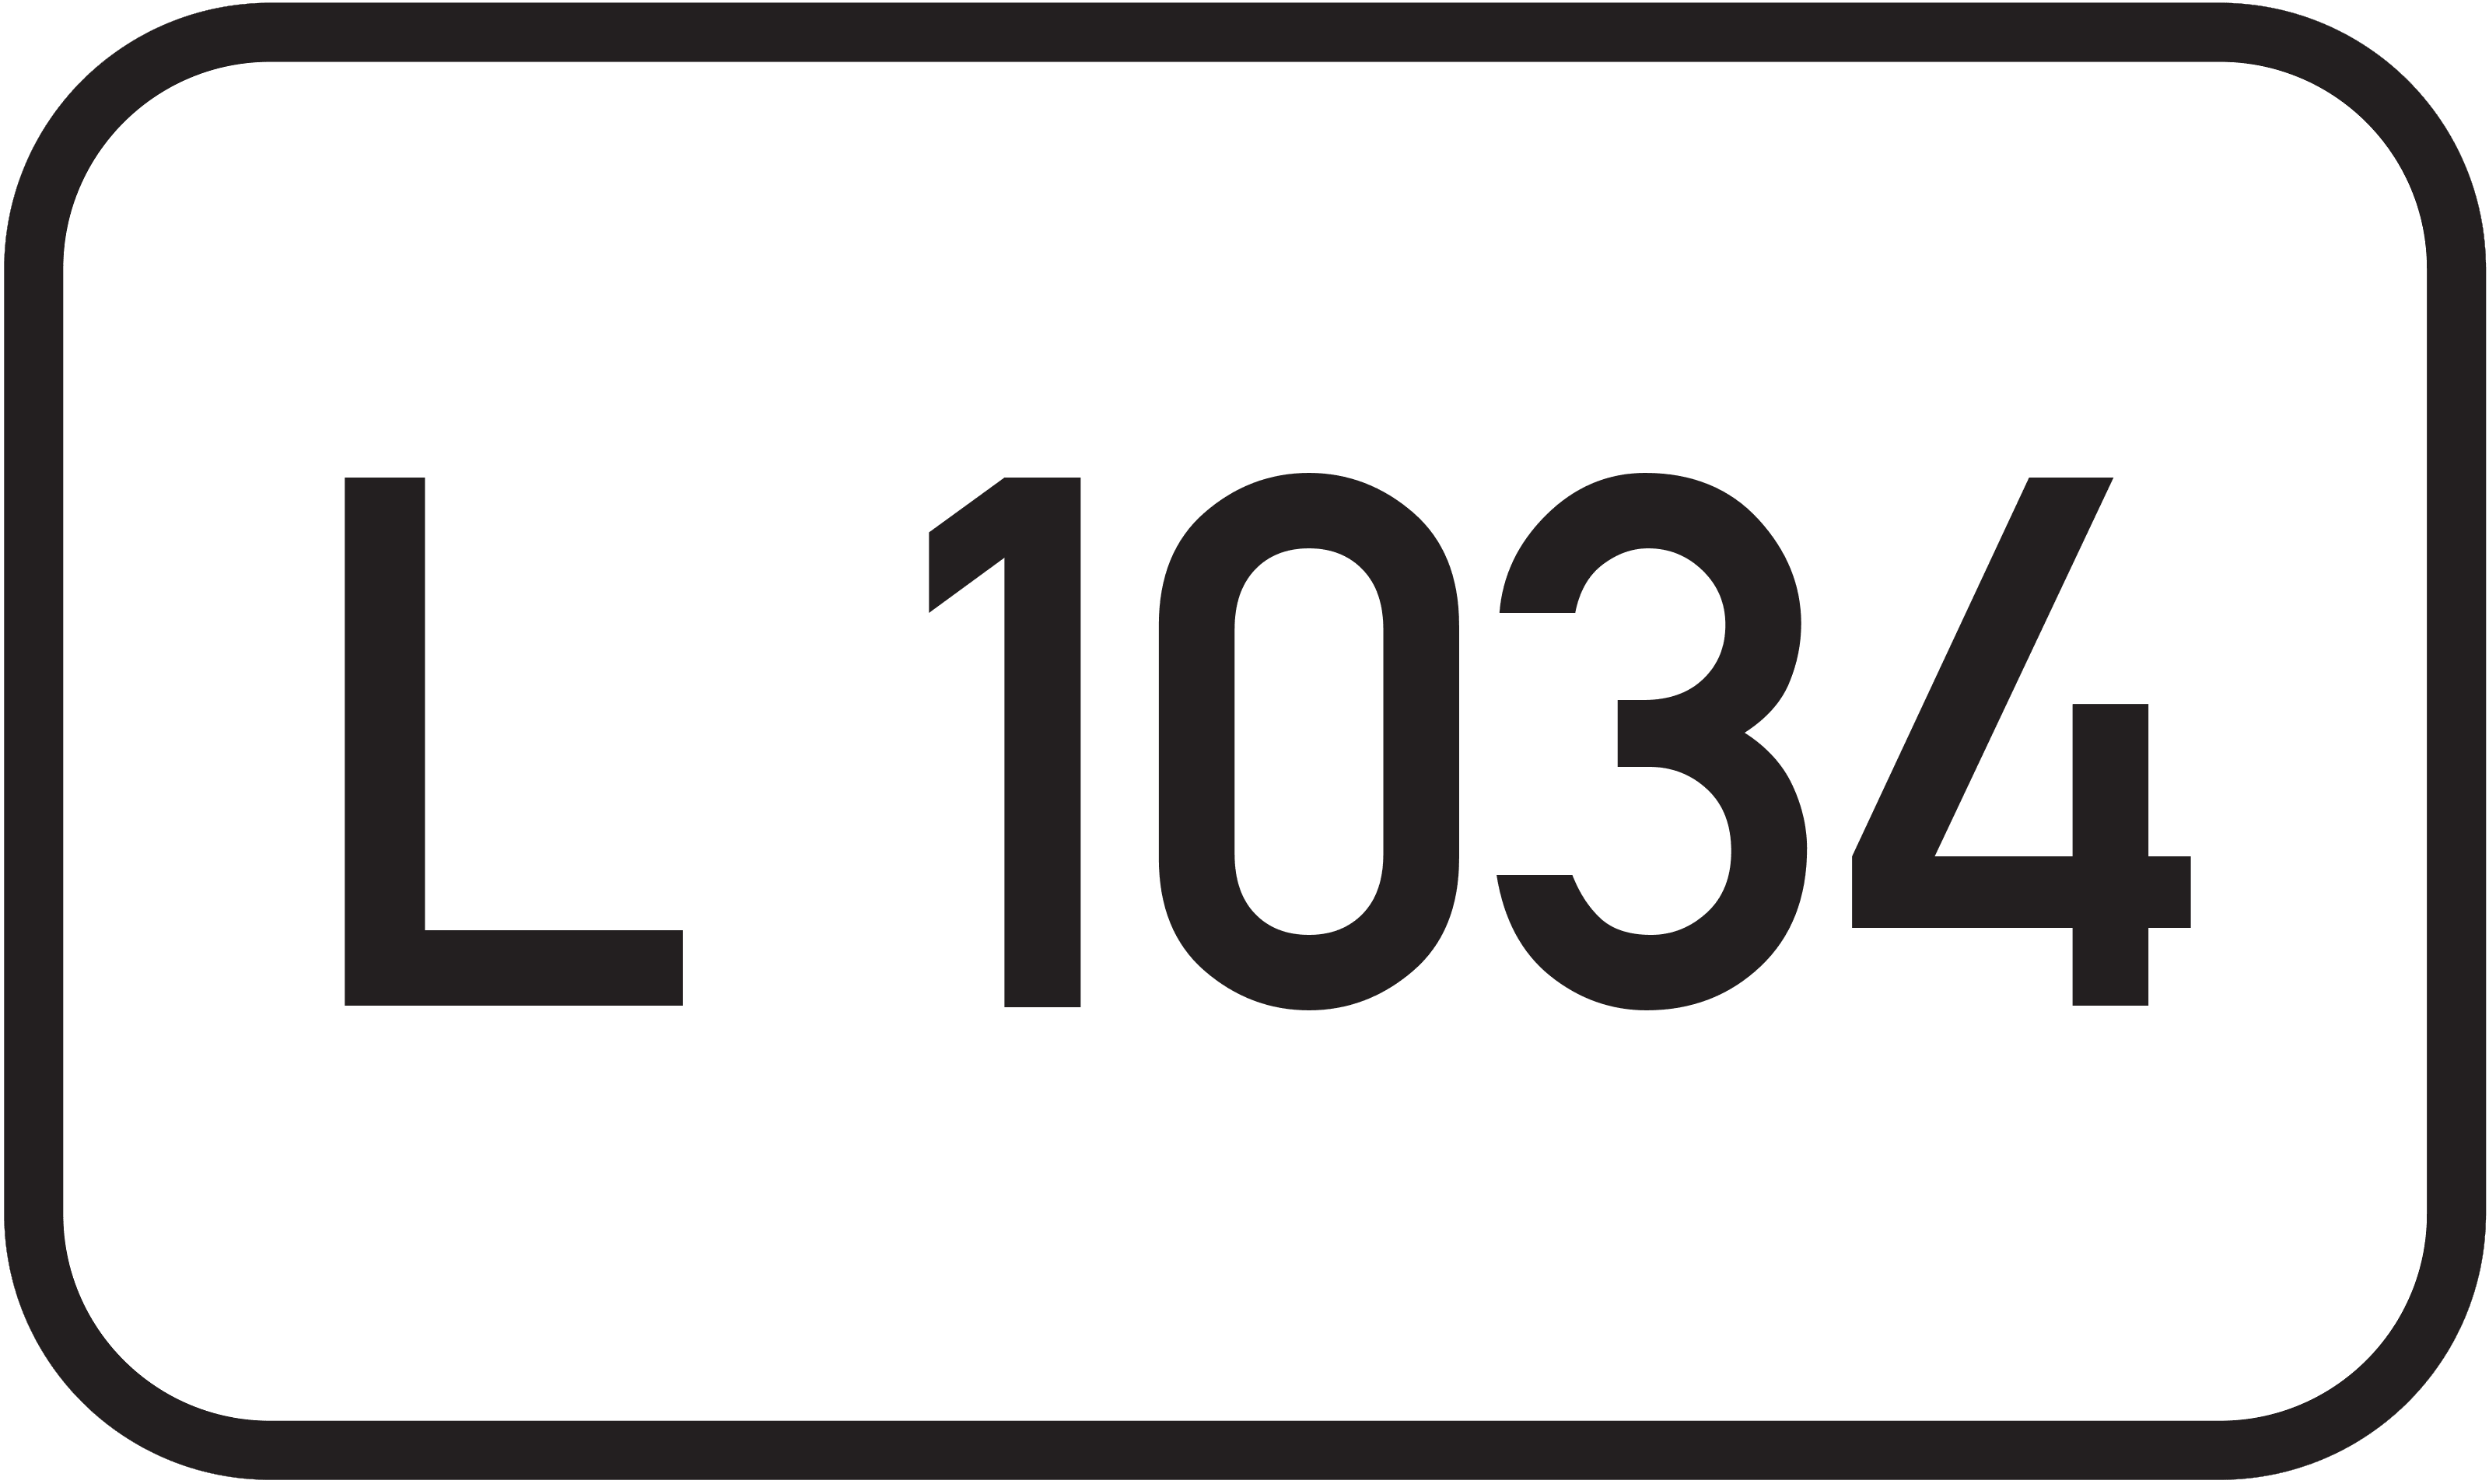 Landesstraße L 1034